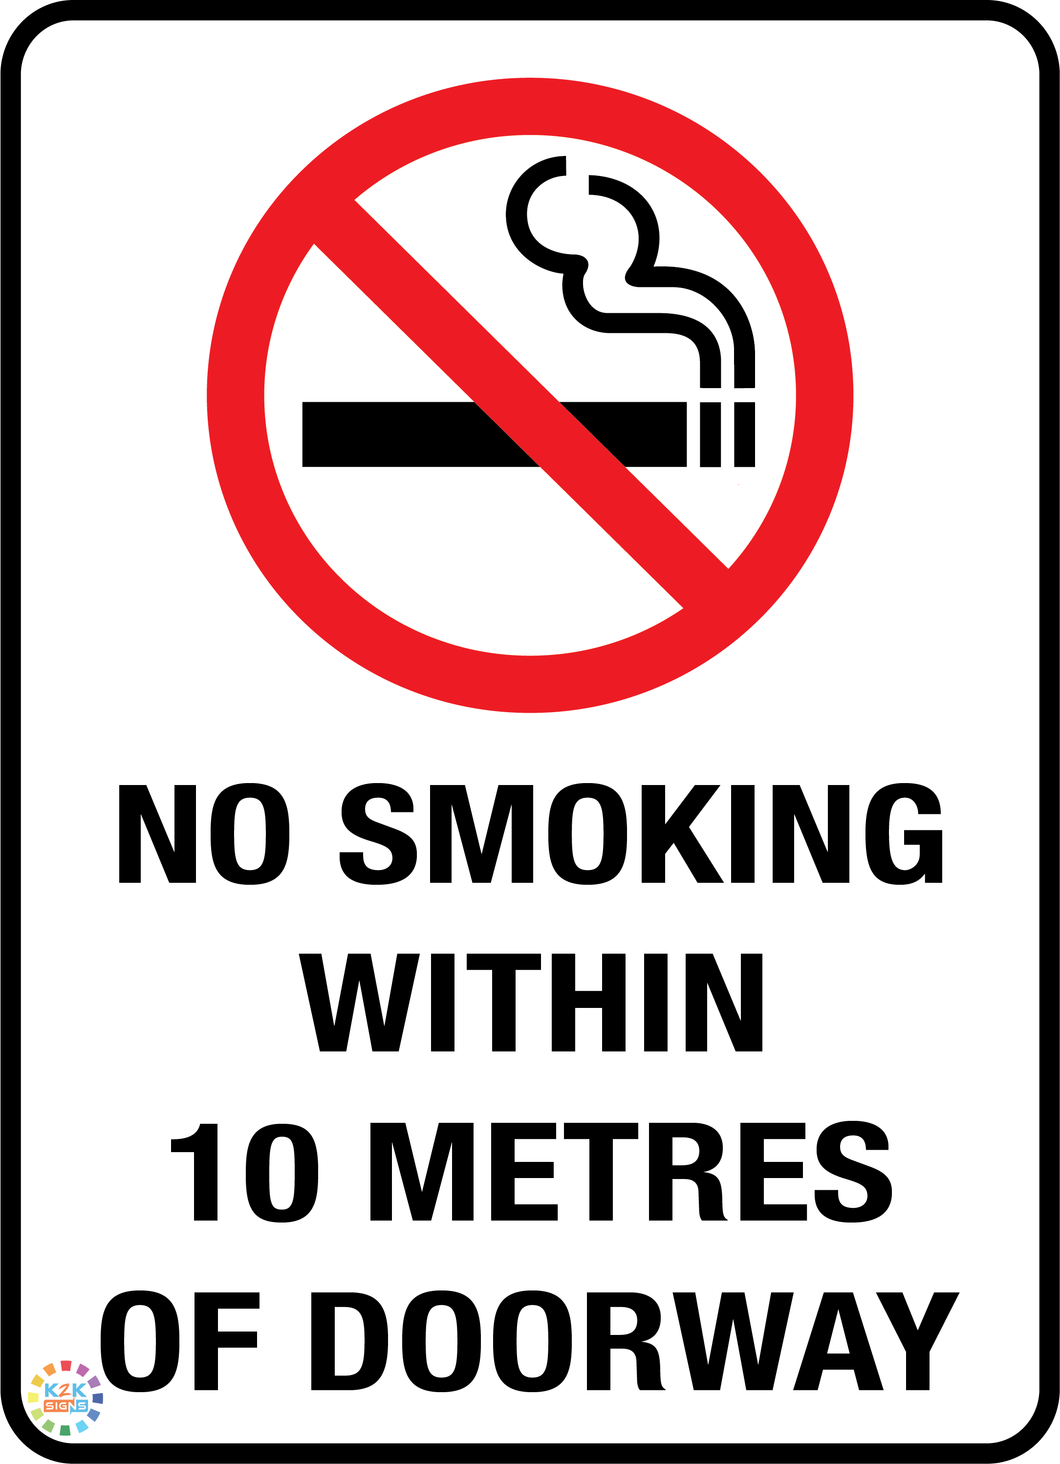 No Smoking Within 10 Metres of Doorway Sign